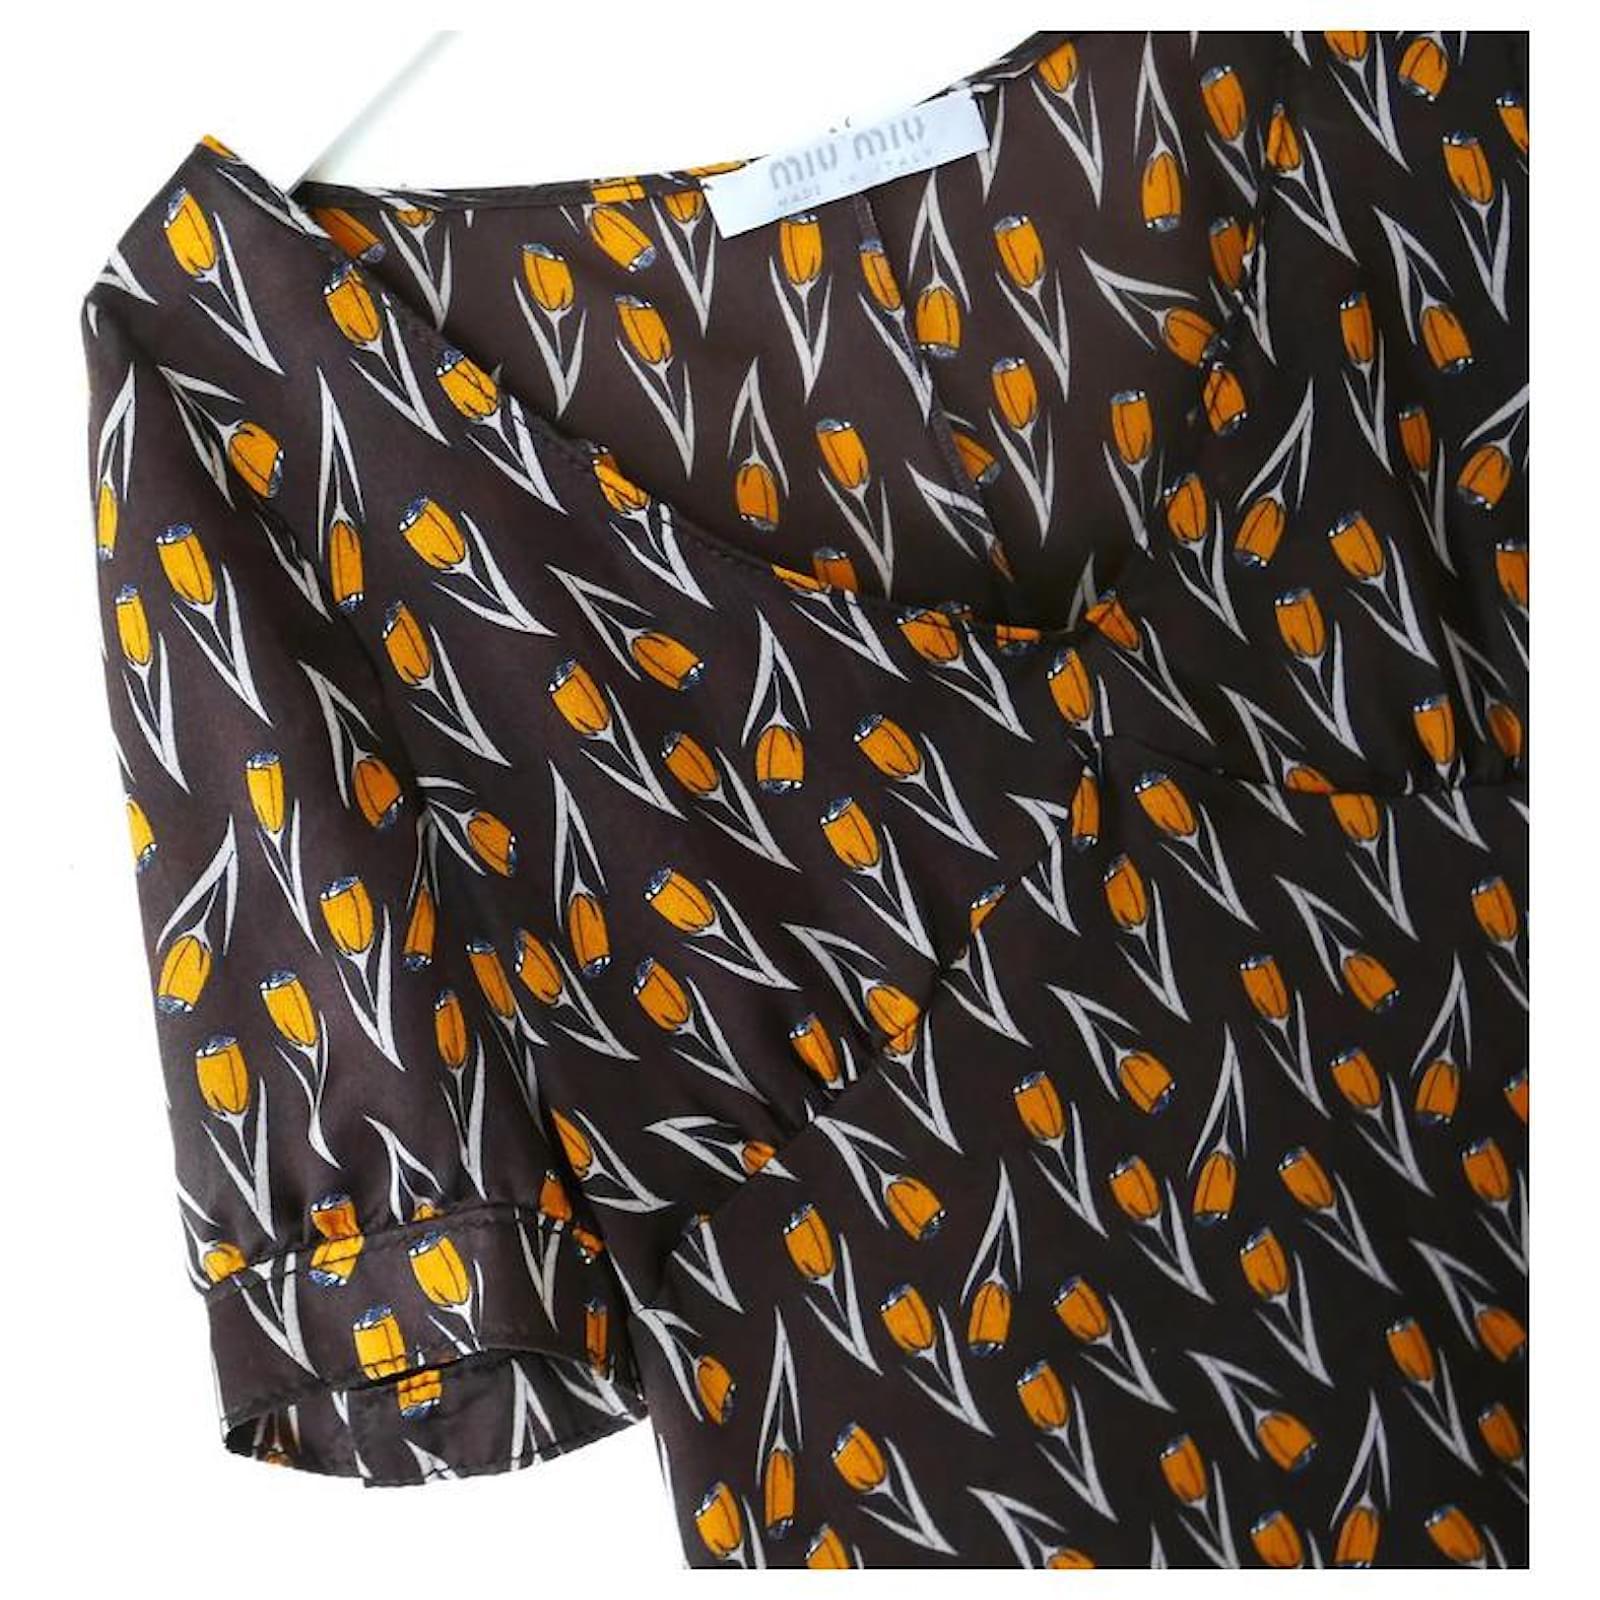 Super rare, magnifique blouse vintage Miu Miu de la Collectional Automne 2000. I superbe état vintage. Réalisé en crêpe de chine de soie marron, fin et délicat, avec un superbe imprimé floral orange. 
Il présente une coupe inspirée des années 1930,